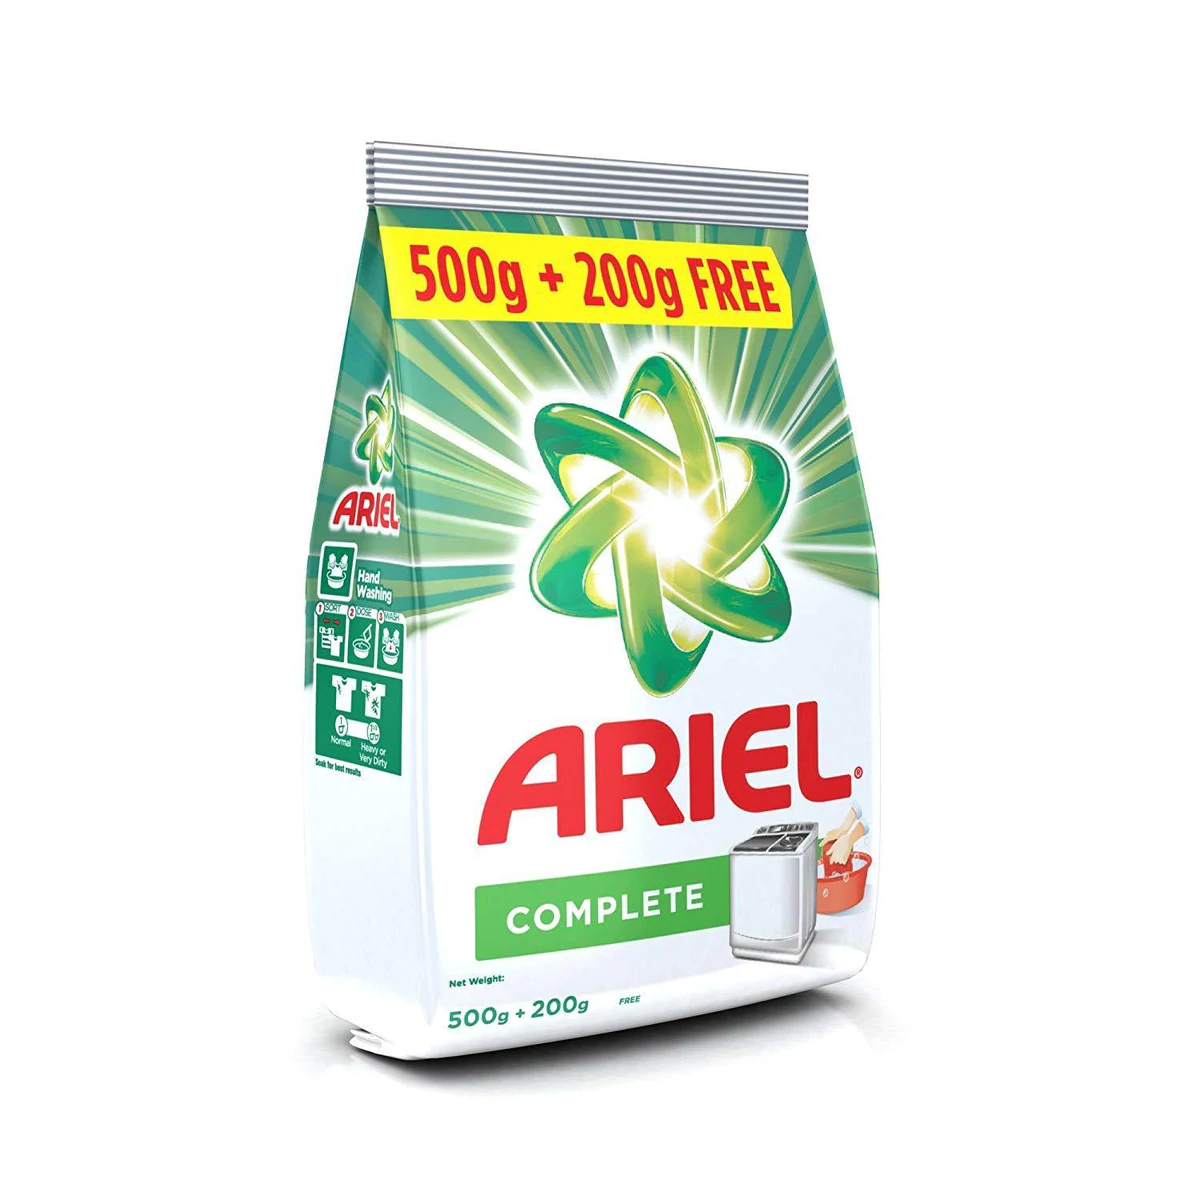 Ariel Complete Detergent Washing Powder 500 GM